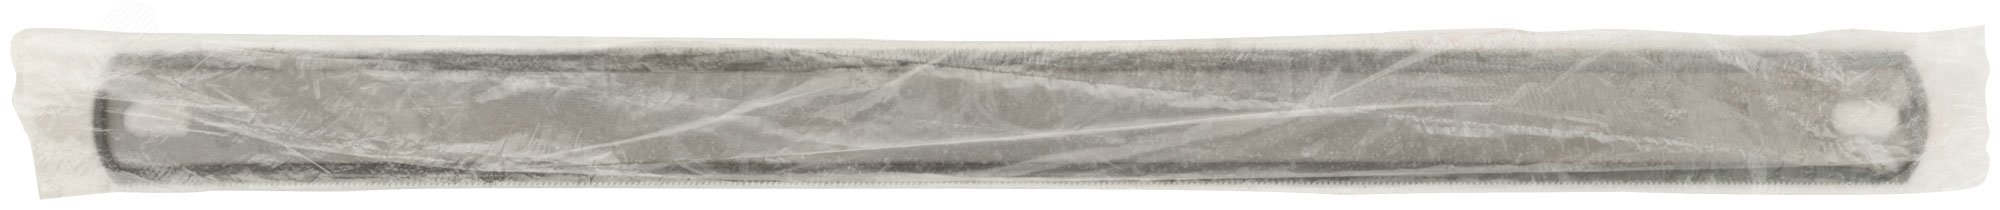 Полотно ножовочное по металлу 300 мм 2-х стороннее (ВИЗ) 40193 РОС - превью 3